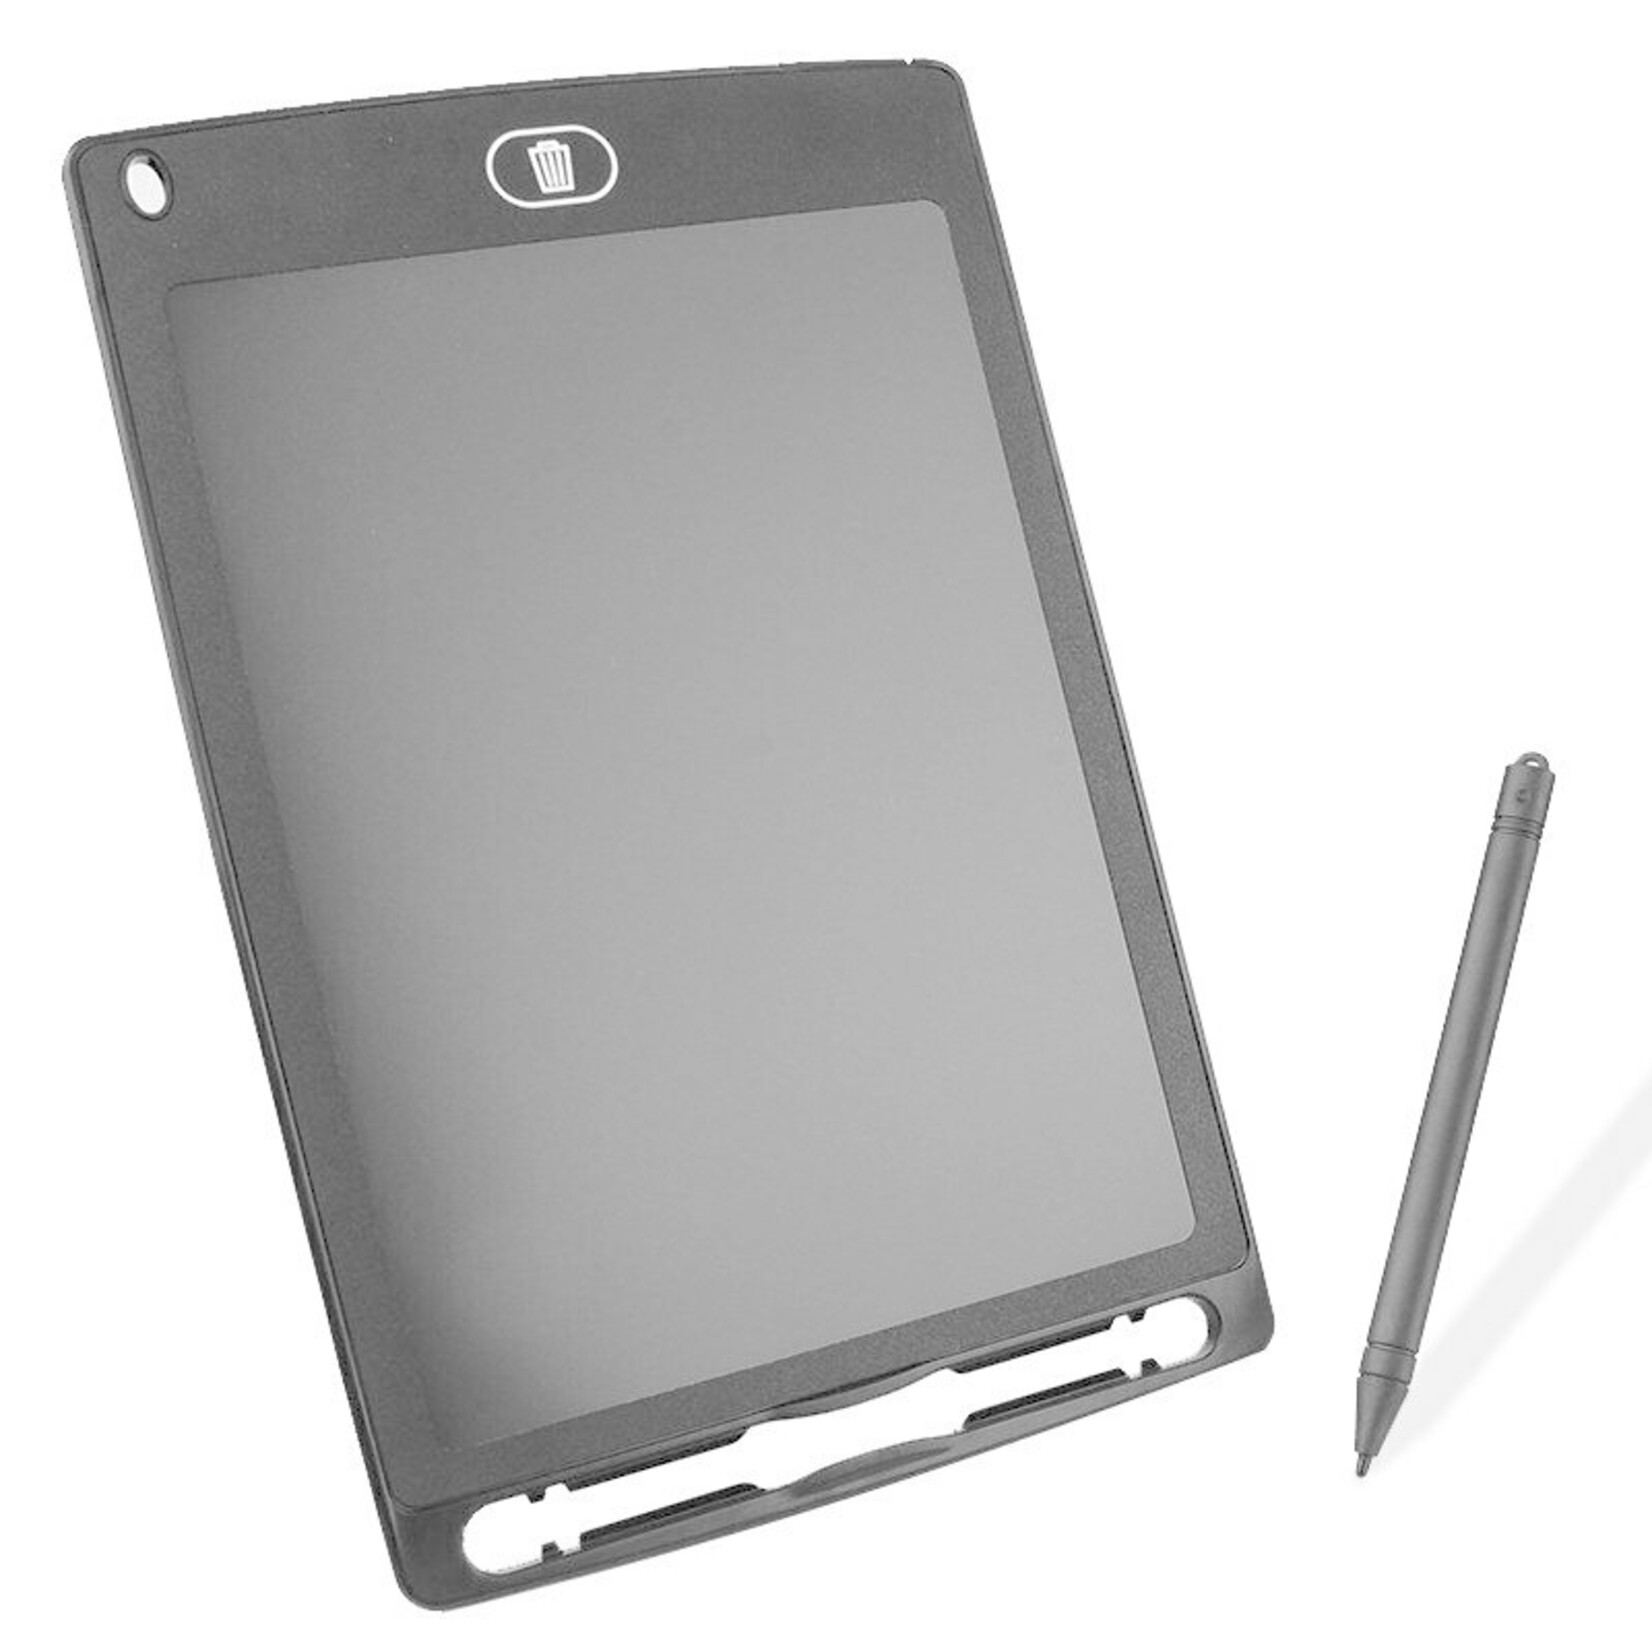 LCD tekenbord met styluspen, 22,5 x 14,5 x 4,6 cm